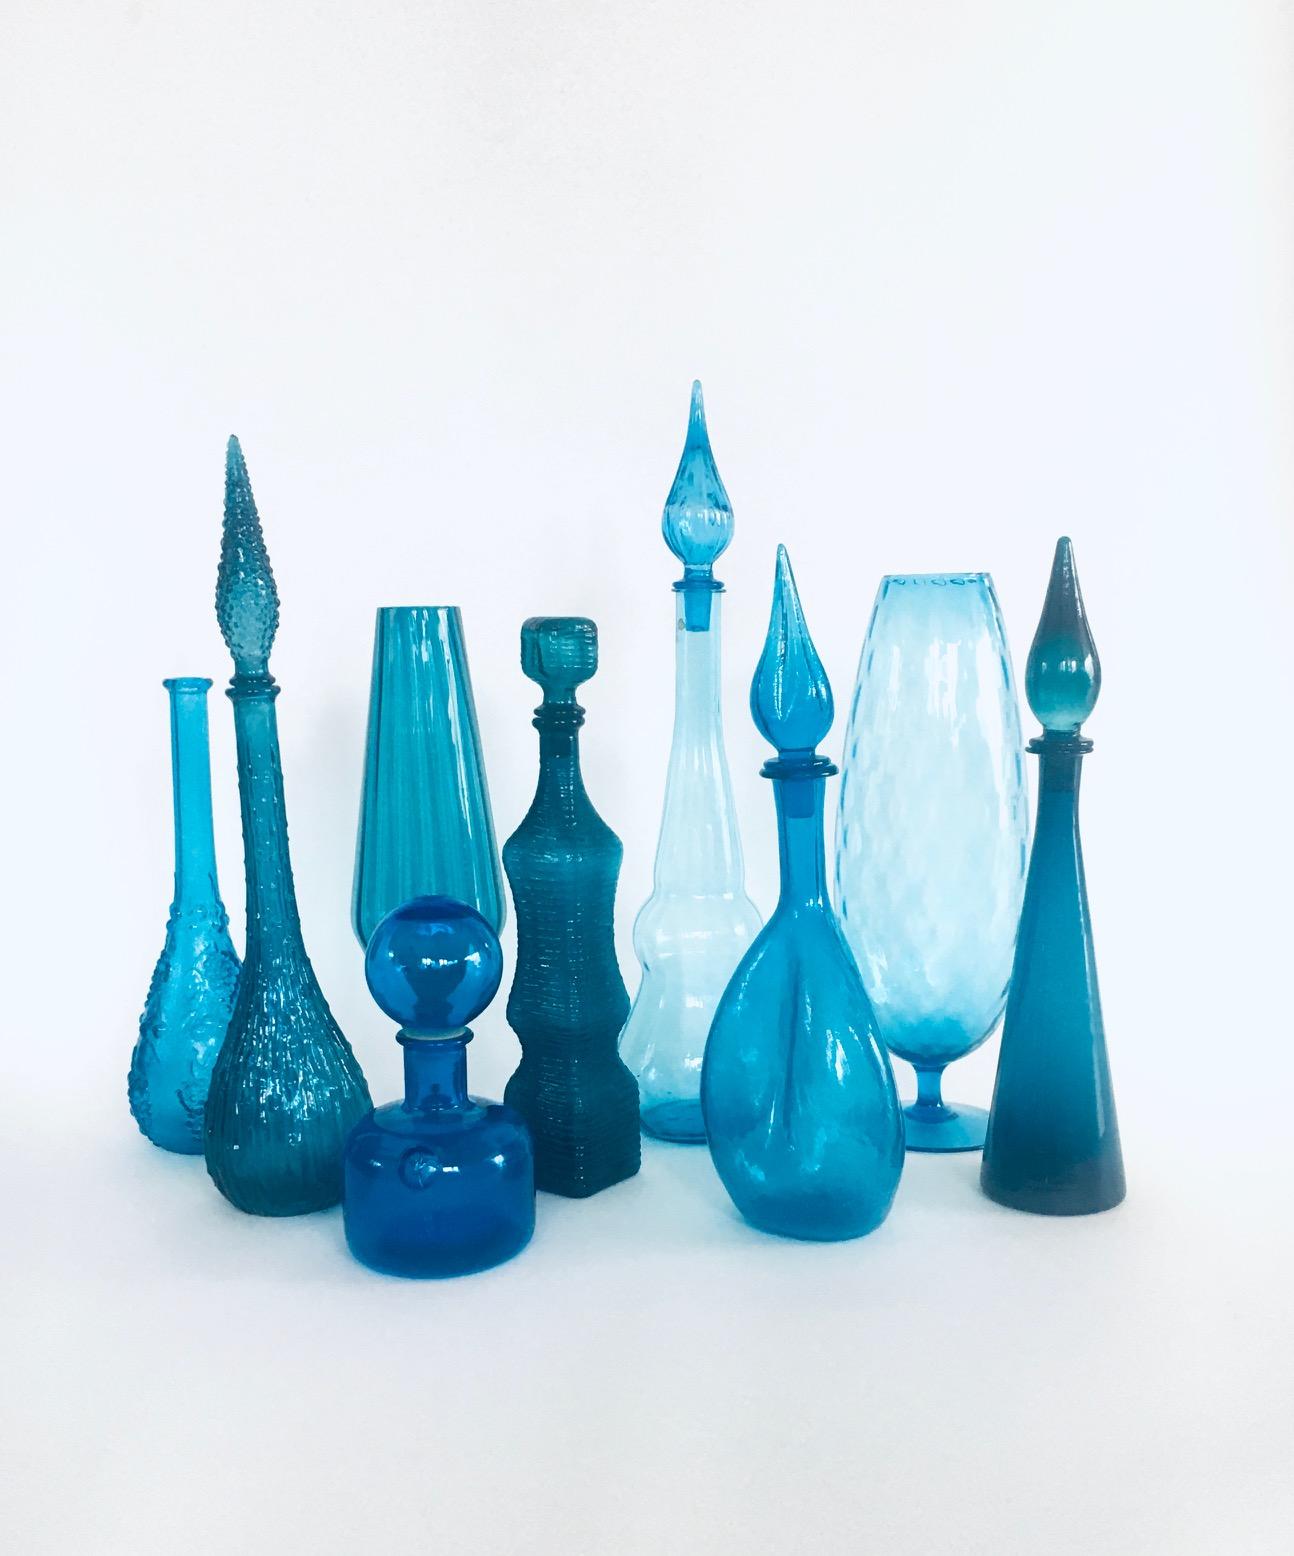 Collection of vintage Blue Glass Vases & Decanters. Alle stammen aus der Zeit der 1960er Jahre. Italien, Frankreich, Skandinavien hergestellt. Empoli und anderes Designglas. Satz mit 9 verschiedenen Teilen. Alle sind aus blauem Glas in verschiedenen